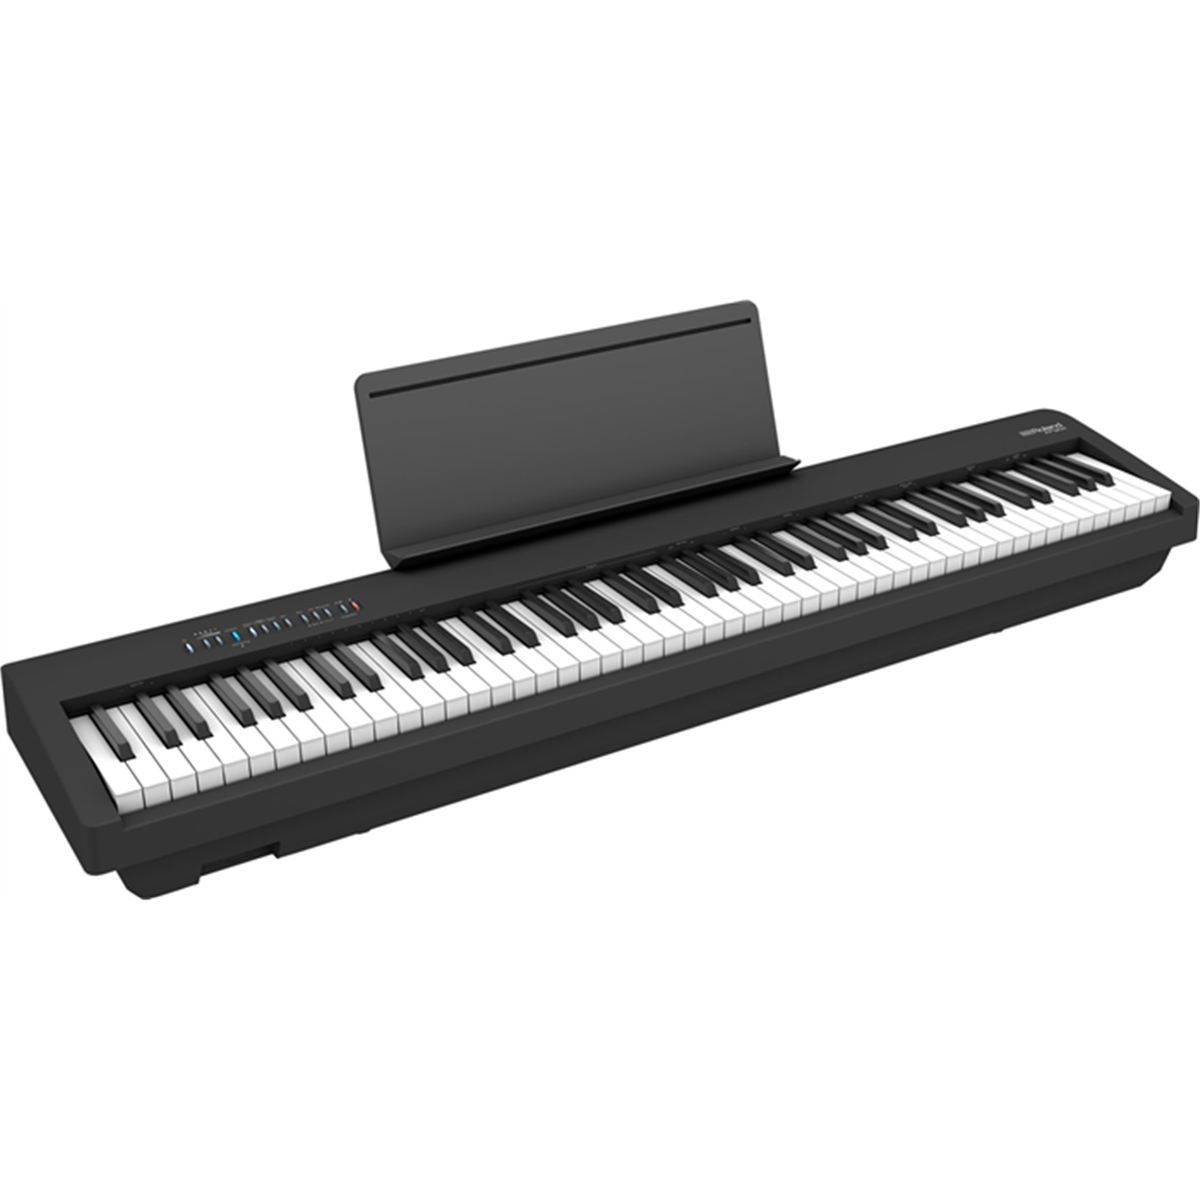 Piano numérique Go:Piano88 Roland, avec clavier complet 88 touches